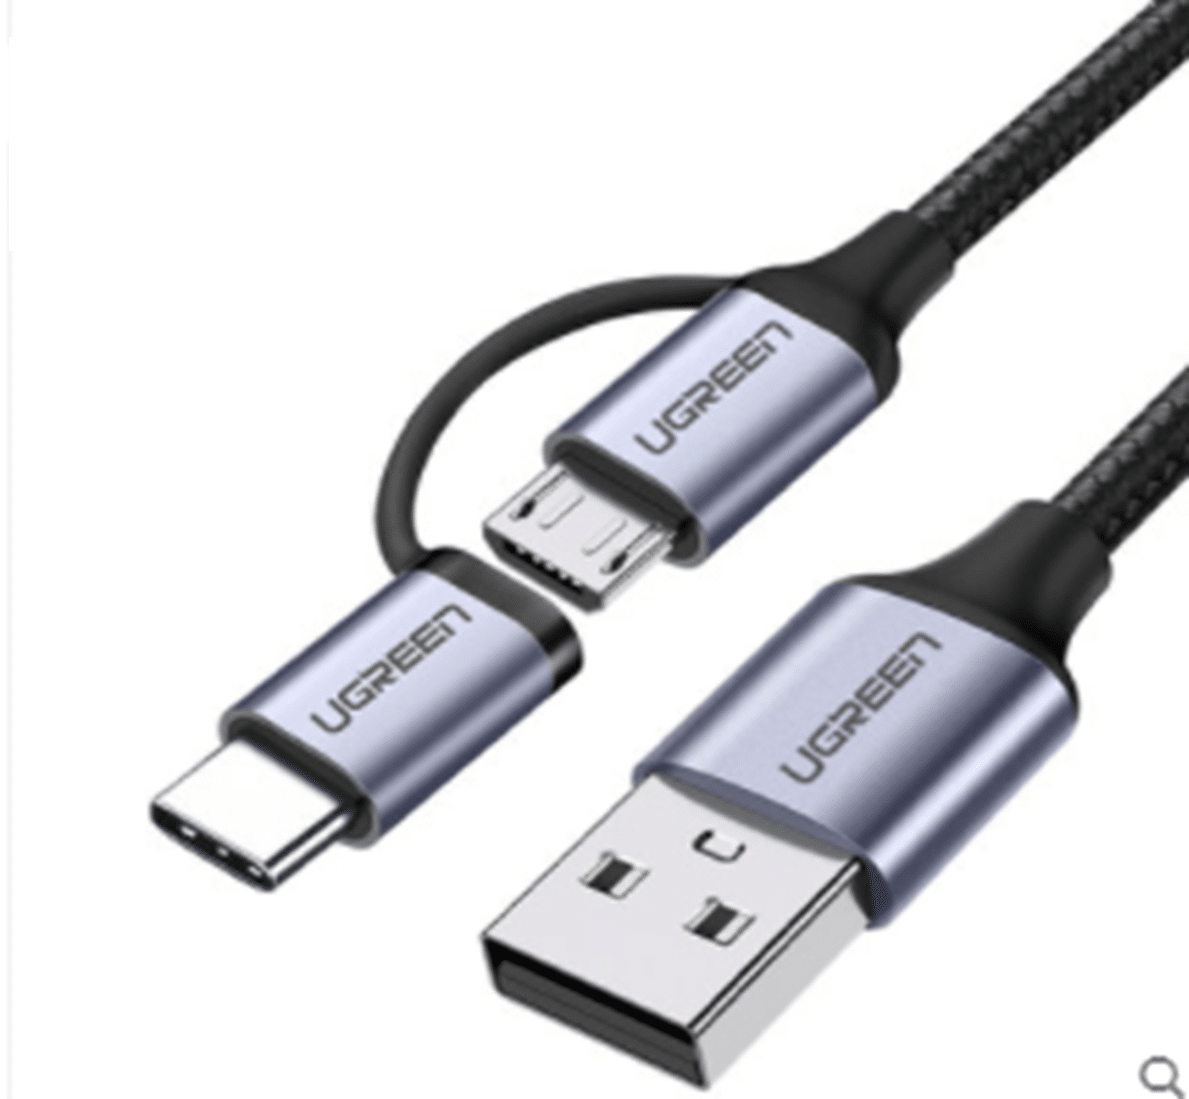 Lee Kritiek kapperszaak 2-in-1 USB-C naar Micro USB en USB-A kabel kopen? Bestel nu - Morgen in  huis.